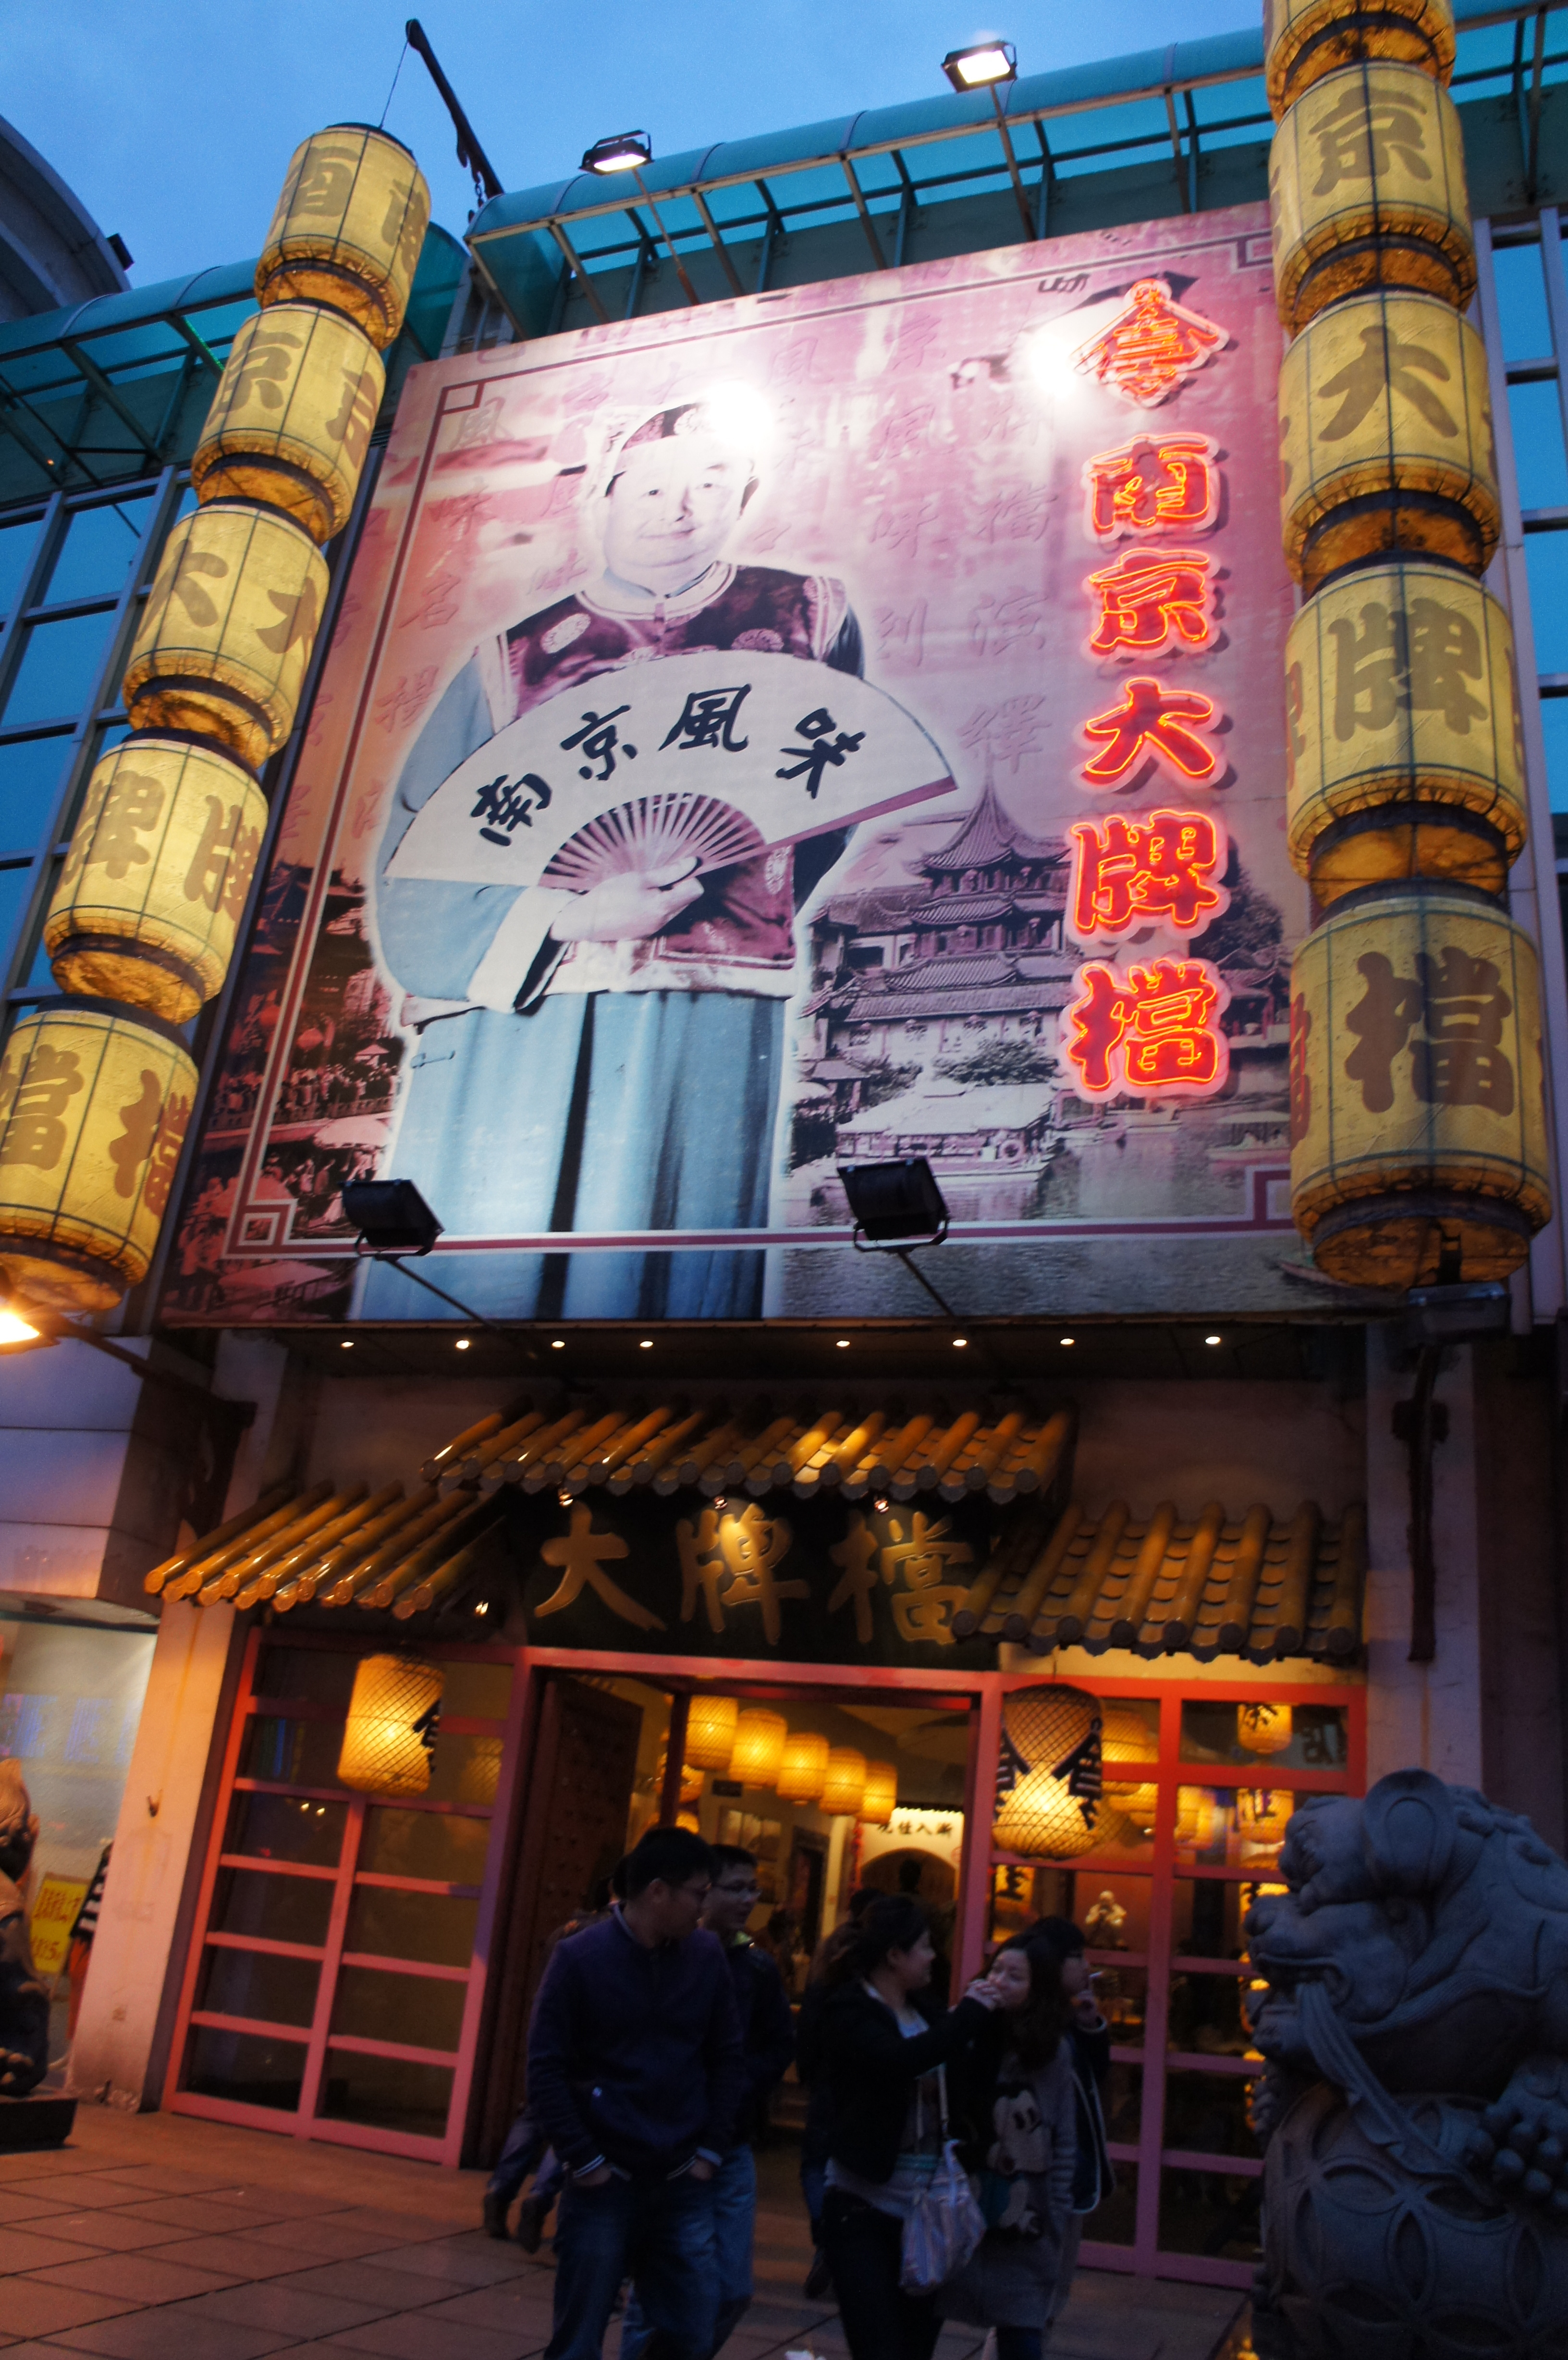 【携程攻略】南京狮子桥美食街适合家庭亲子旅游吗,狮子桥美食街家庭